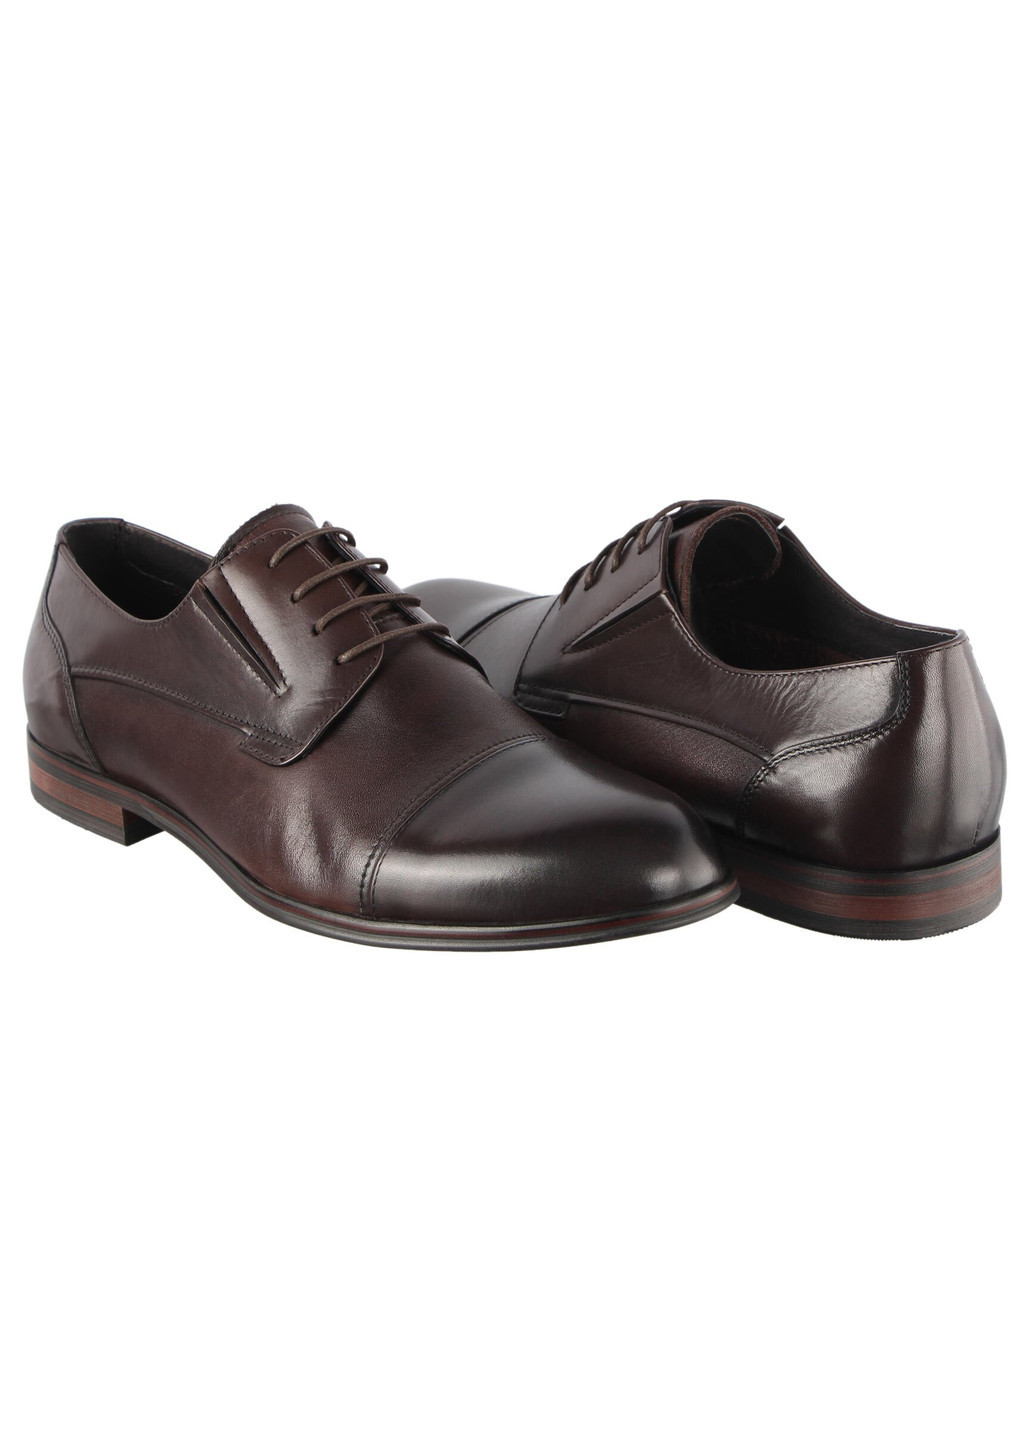 Коричневые мужские классические туфли 196245 Buts на шнурках